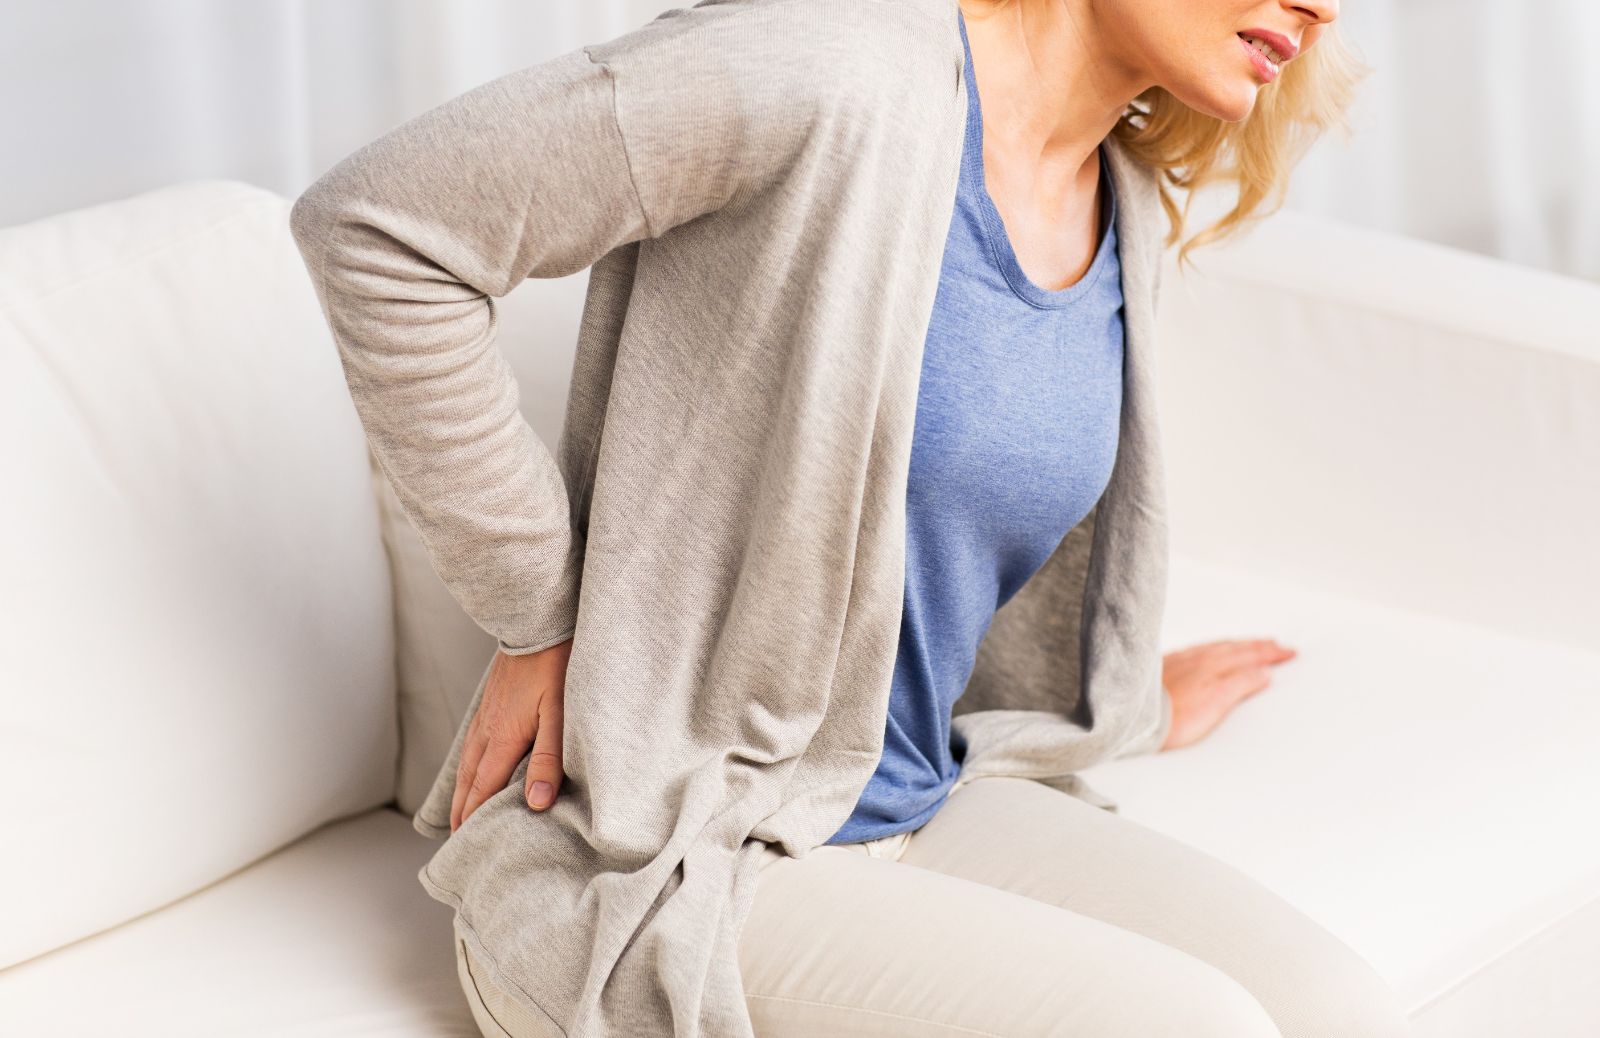 Rimedi naturali per il mal di schiena:ecco quali sono